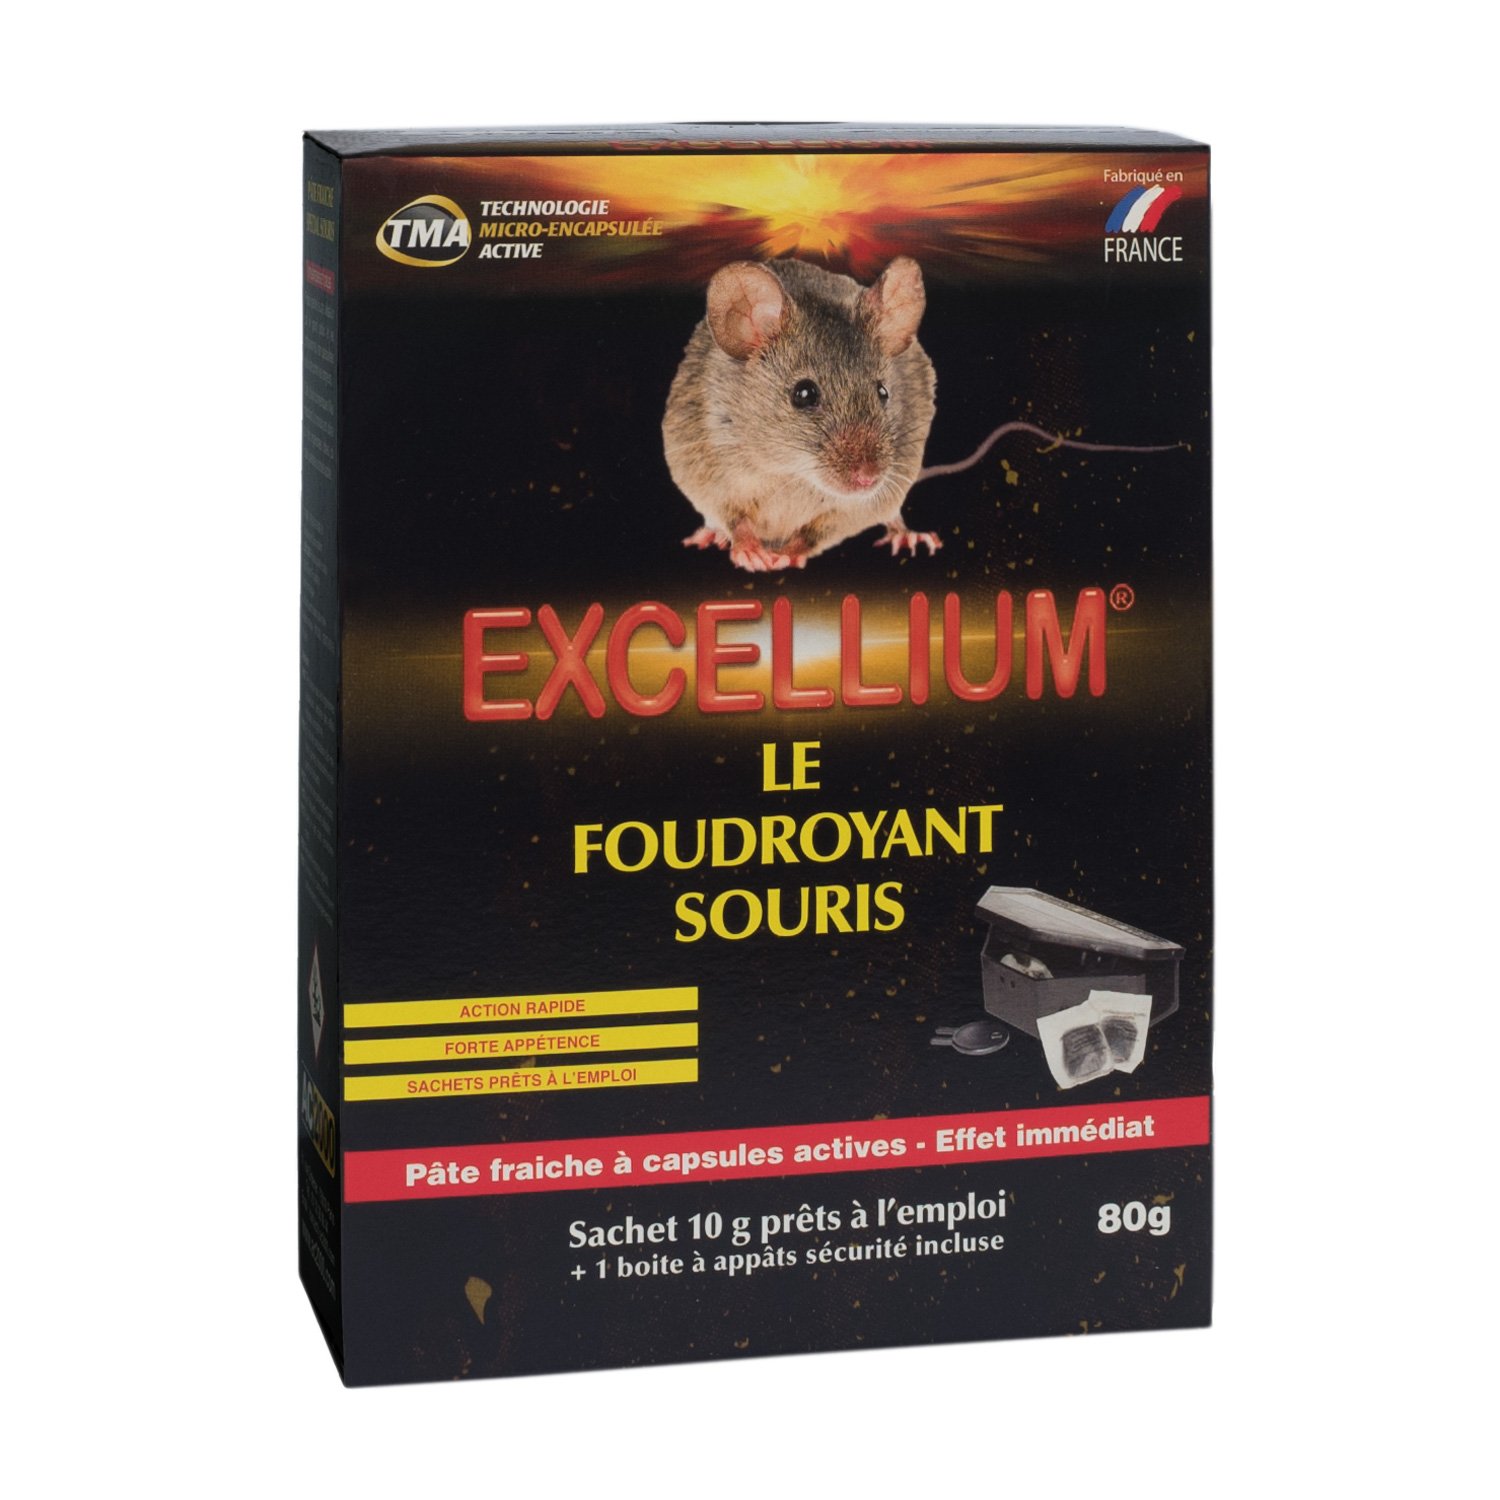 AC 2000 on X: Le foudroyant souris Excellium est une pâte à effet radical  sur les souris domestiques. Son action est foudroyante, sans douleur.  Souricide actif et rapide, efficacité 100%. Ce produit